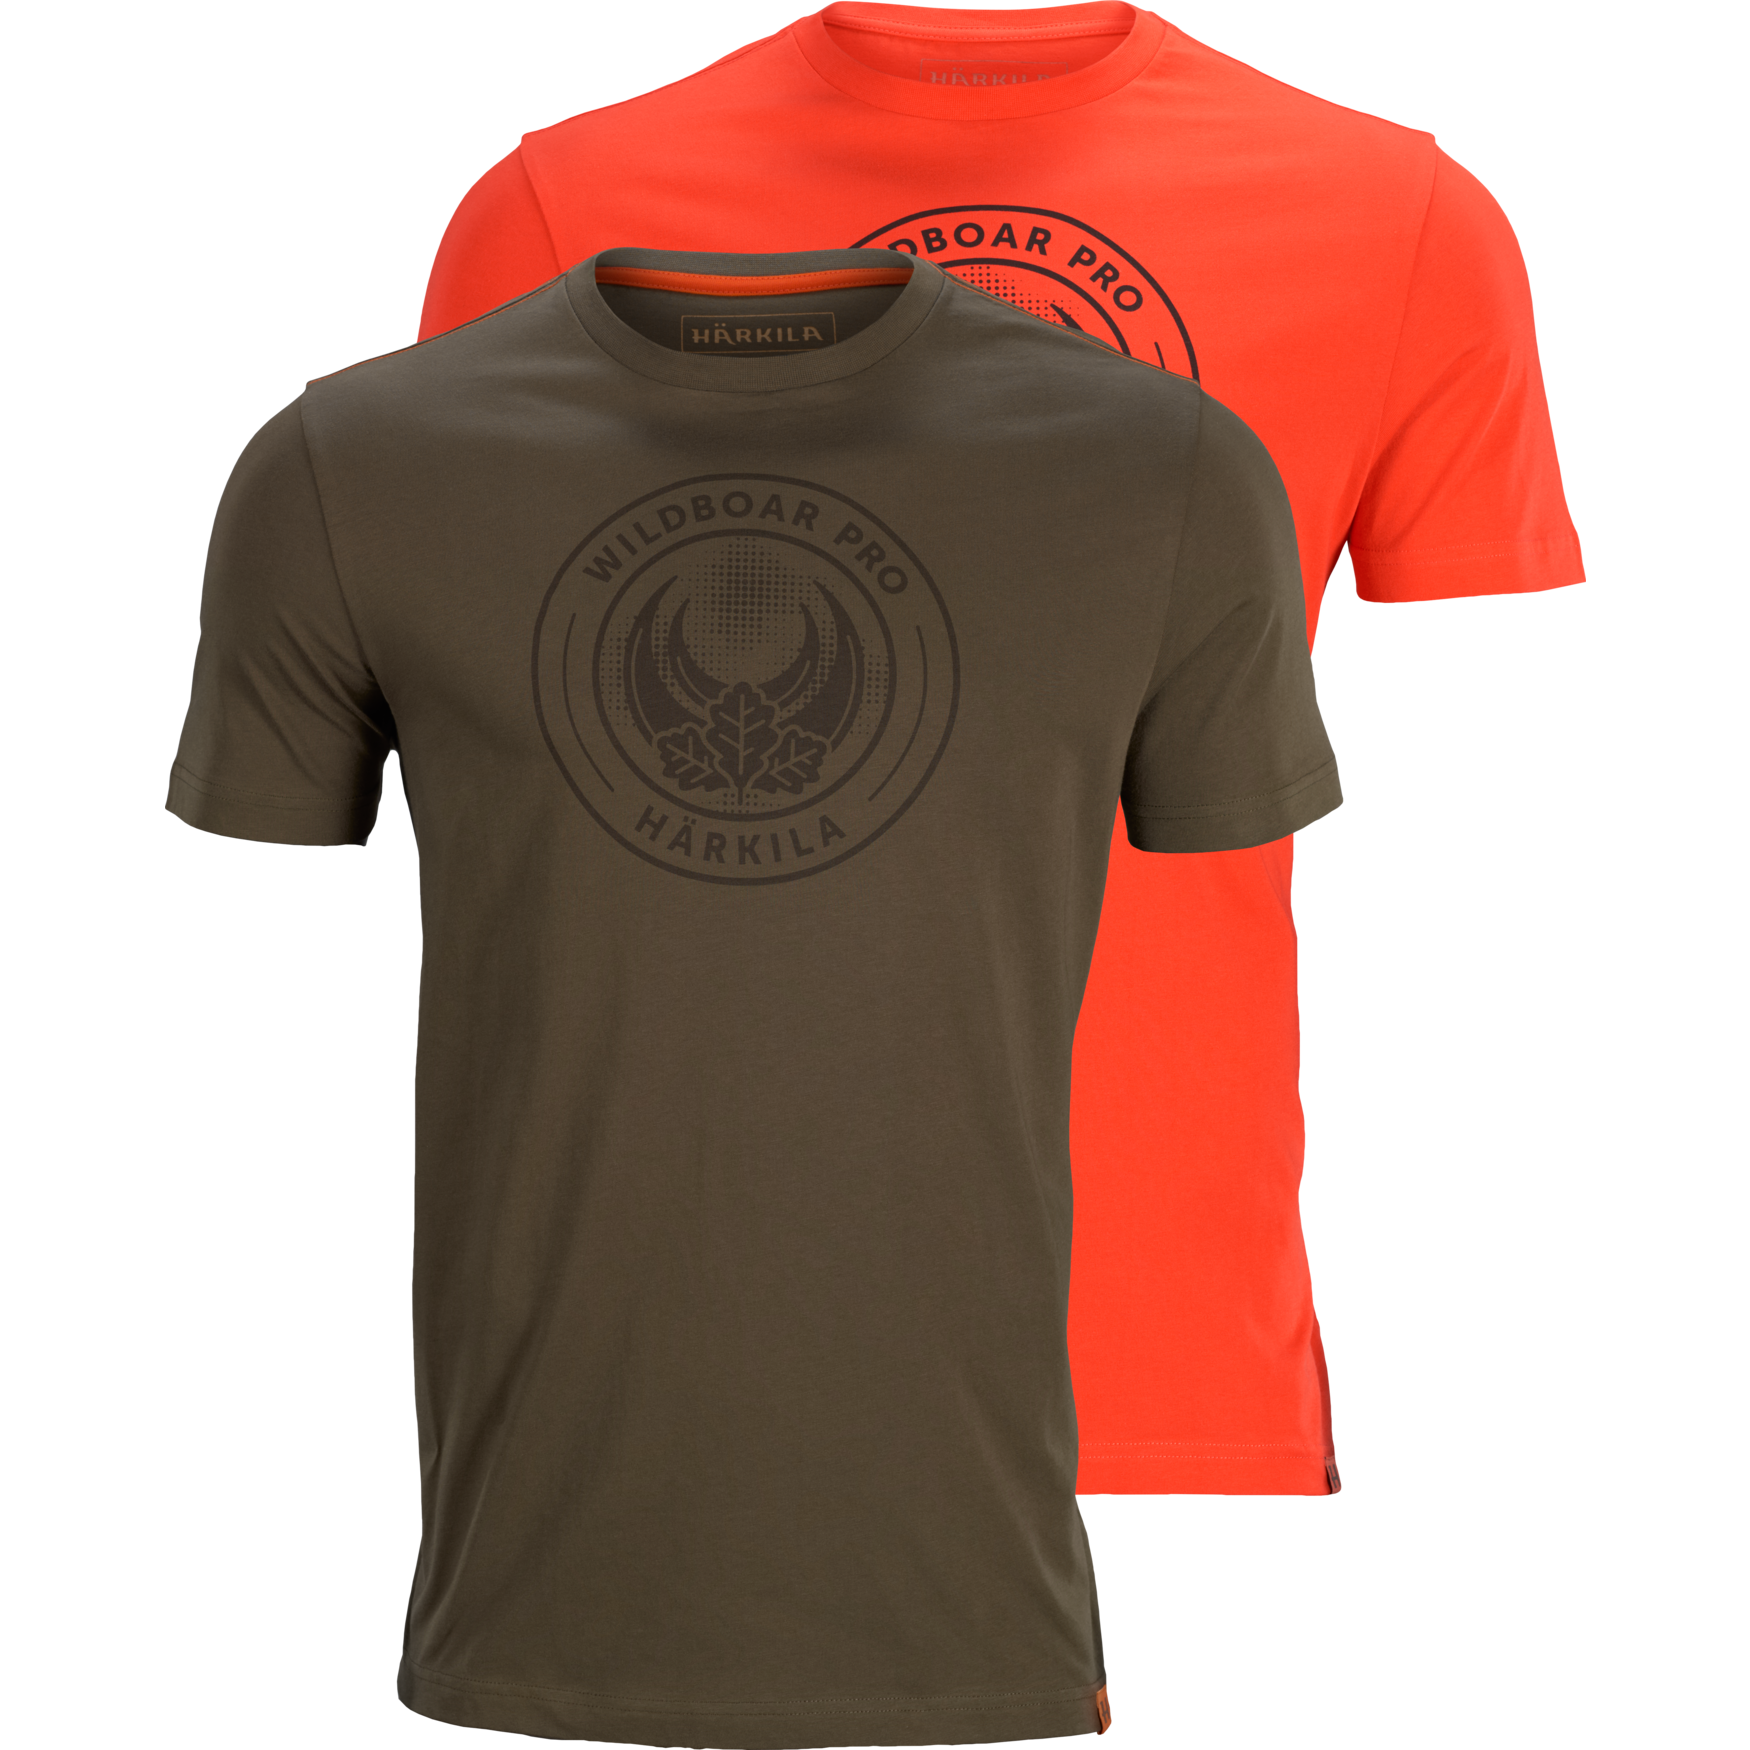 Pánske dvoj-balenie tričiek Härkila Wildboar Pro S/S – Willow Green, Orange - limitovaná edícia   S